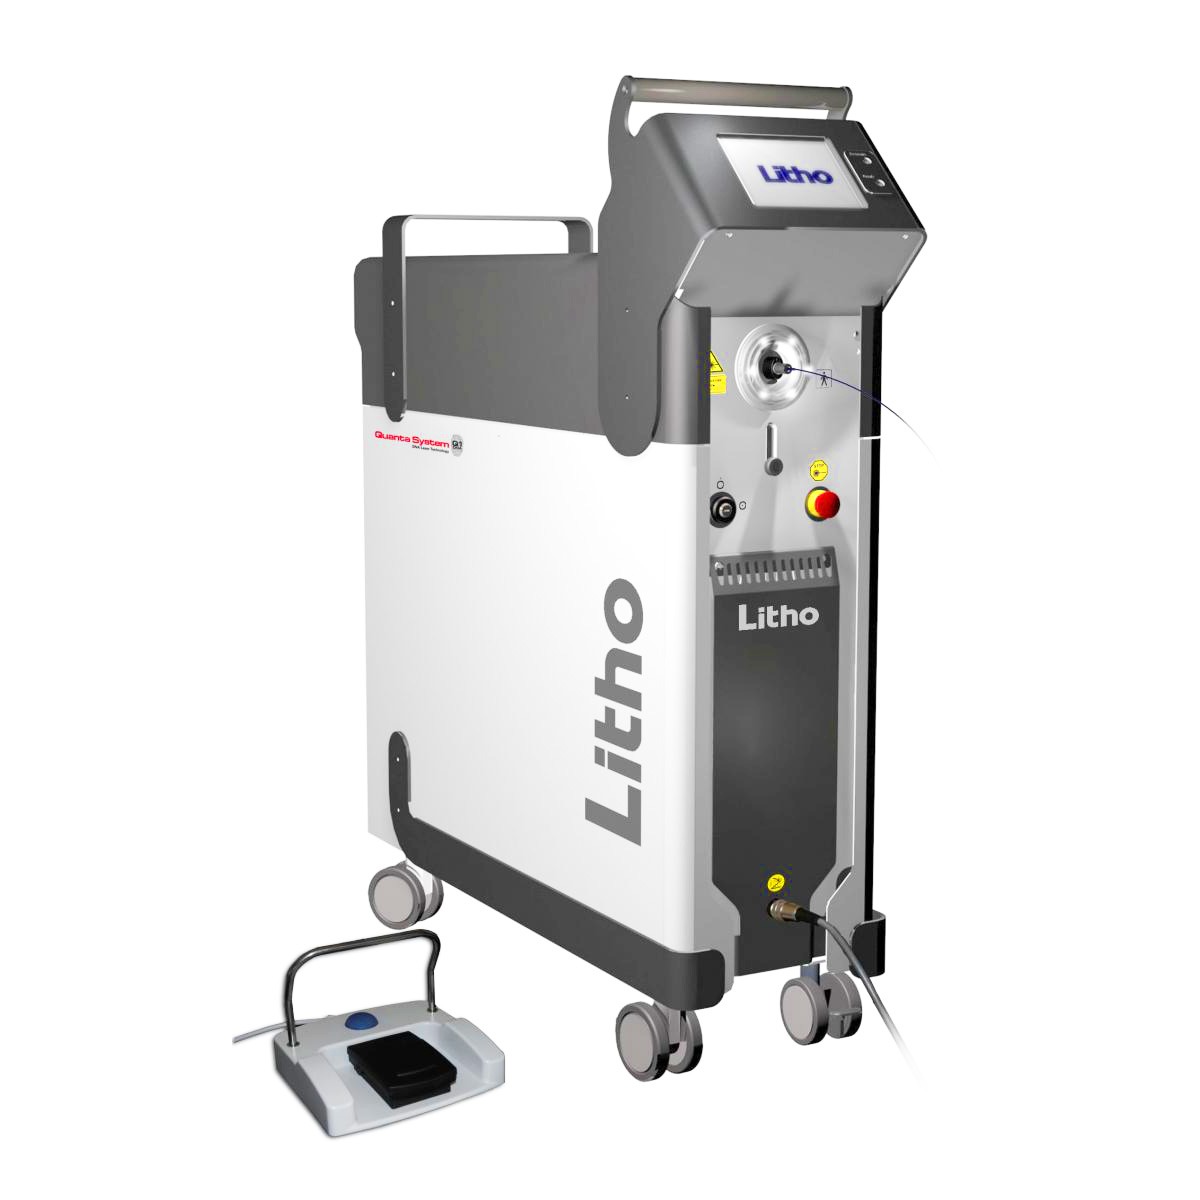 Аппарат лазерный хирургический Litho DK30, Quanta System, Италия (30 Вт) с принадлежностями для лазерной литотрипсии по акции